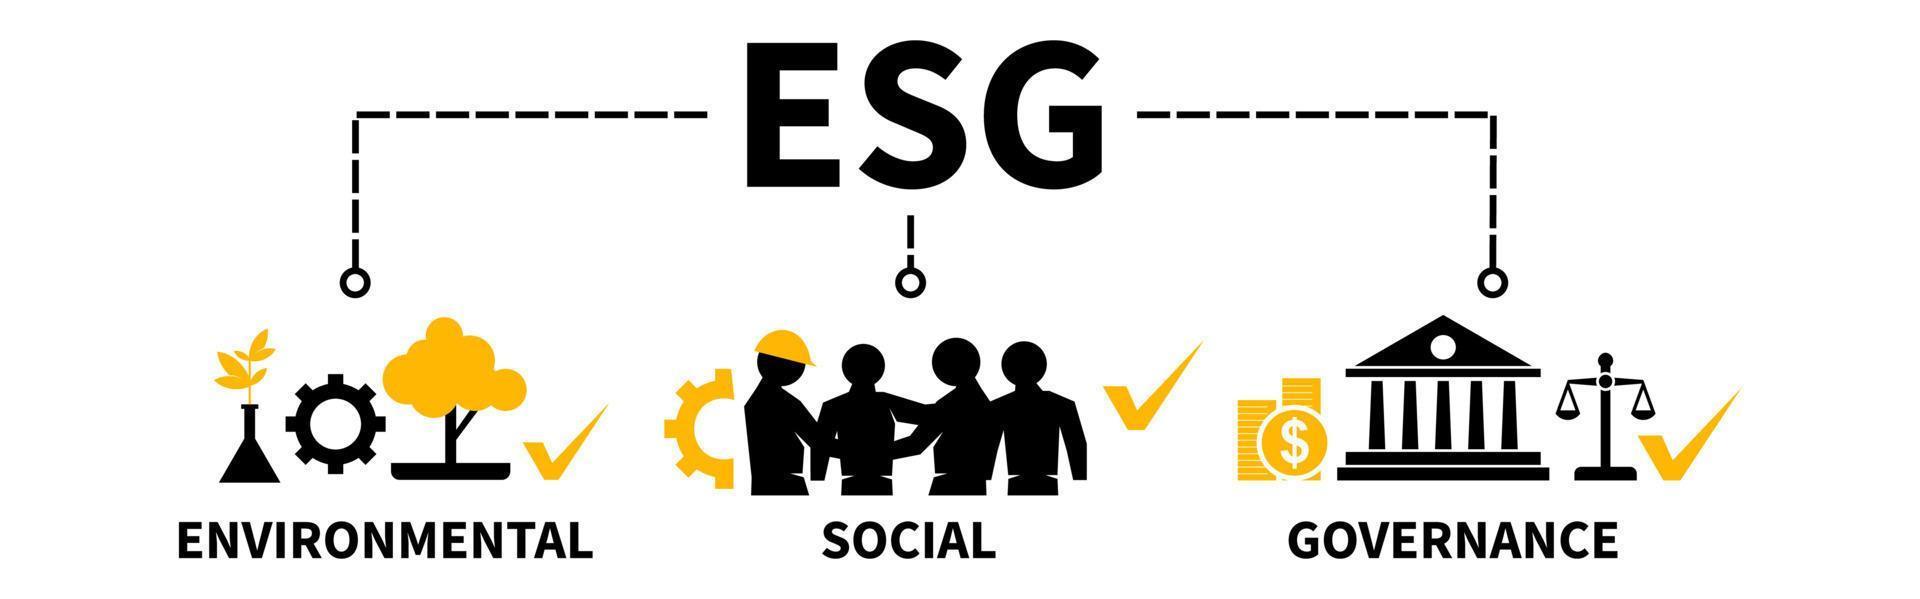 esg vector illustratie banner duurzaam en ethisch bedrijfsconcept voor milieu sociaal bestuur met icon